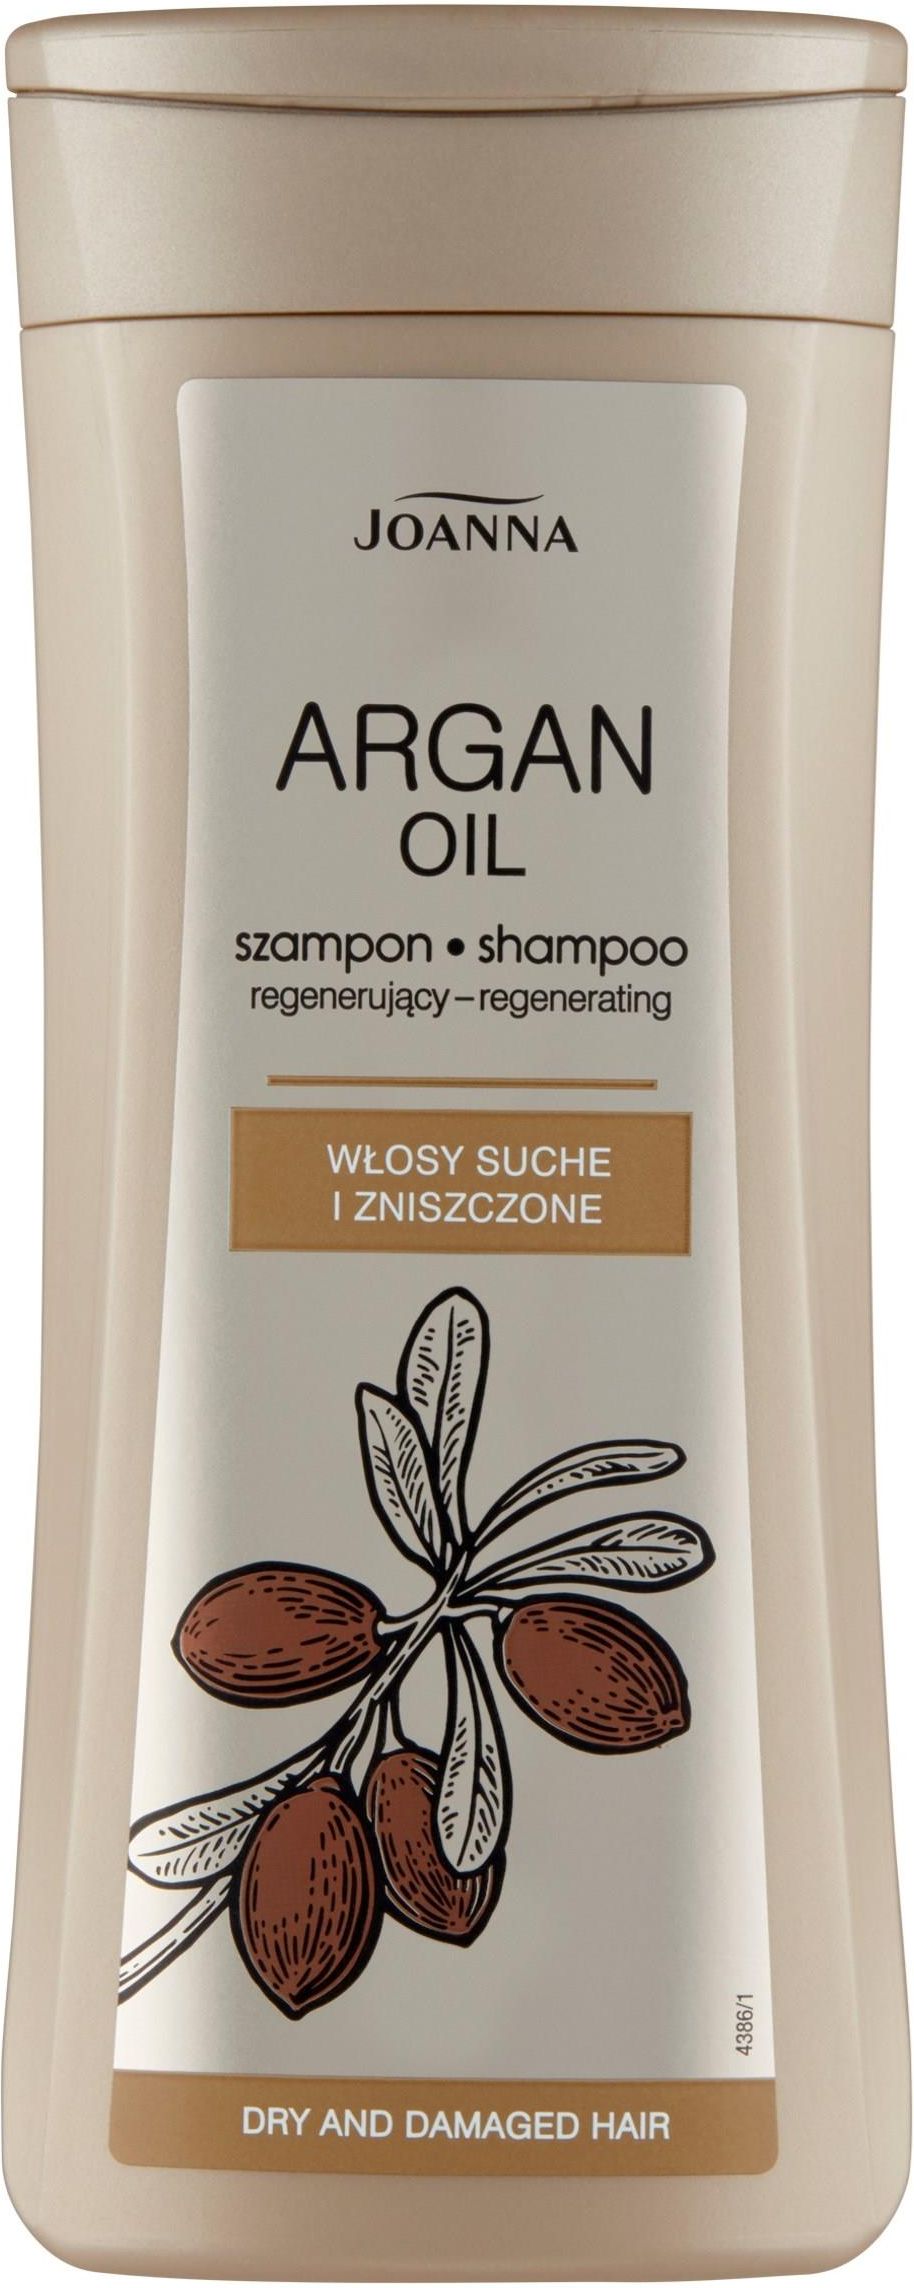 joanna szampon wizaz argan oil